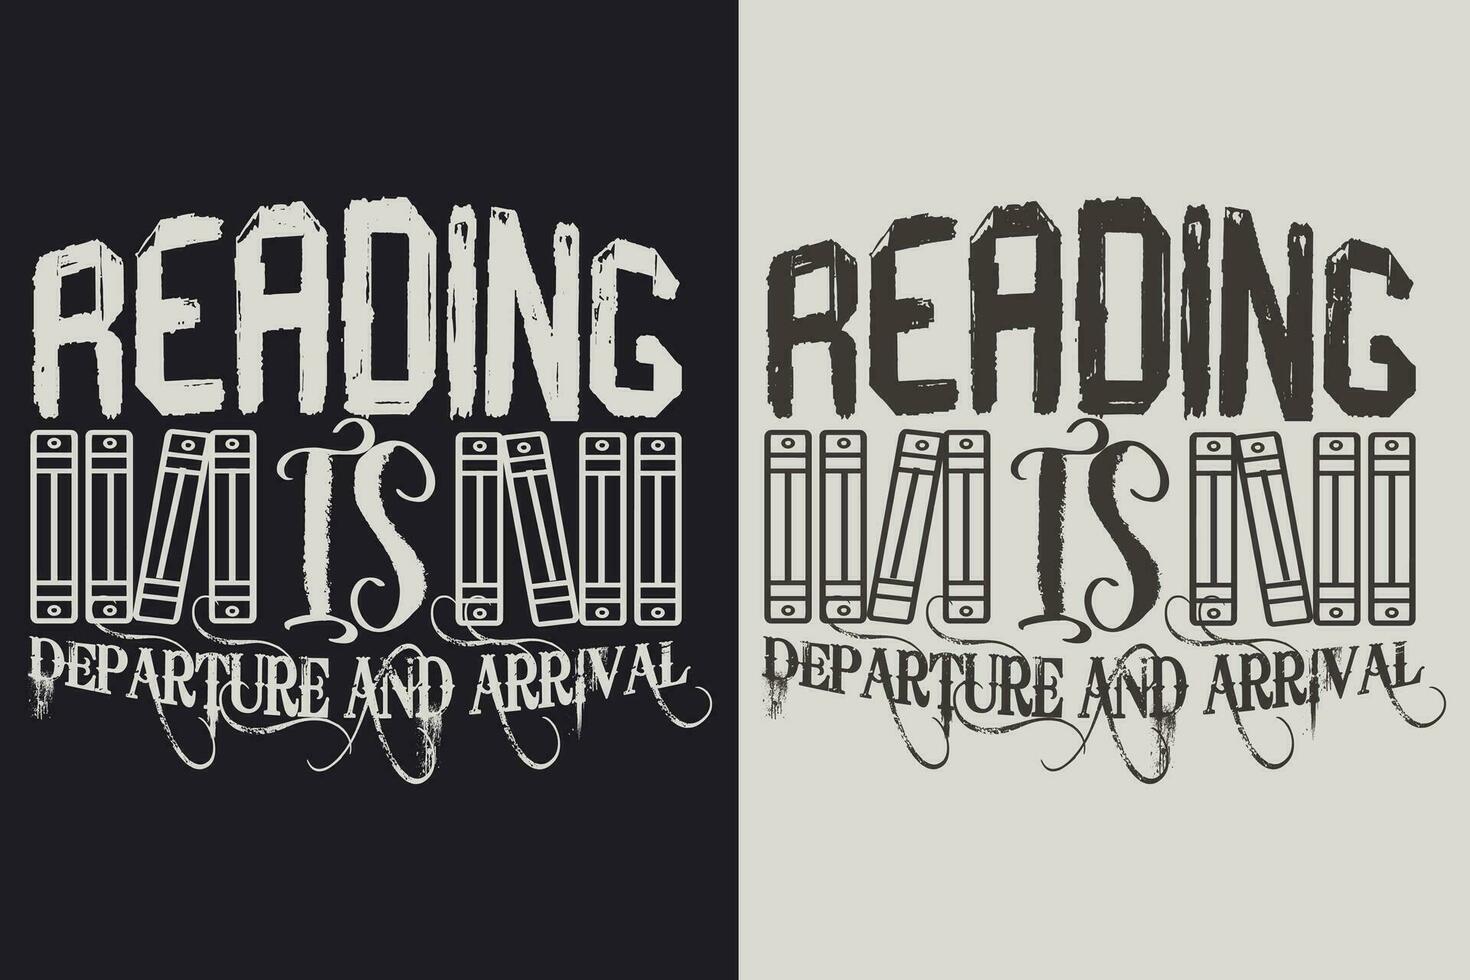 läsning är avresa och ankomst, bok älskare skjorta, litterär skjorta, bokälskande skjorta, läsning bok, bibliotekarie skjorta, bok läsare skjorta, inspirera skjorta, gåva för bibliotekarie, gåva för bok älskare vektor